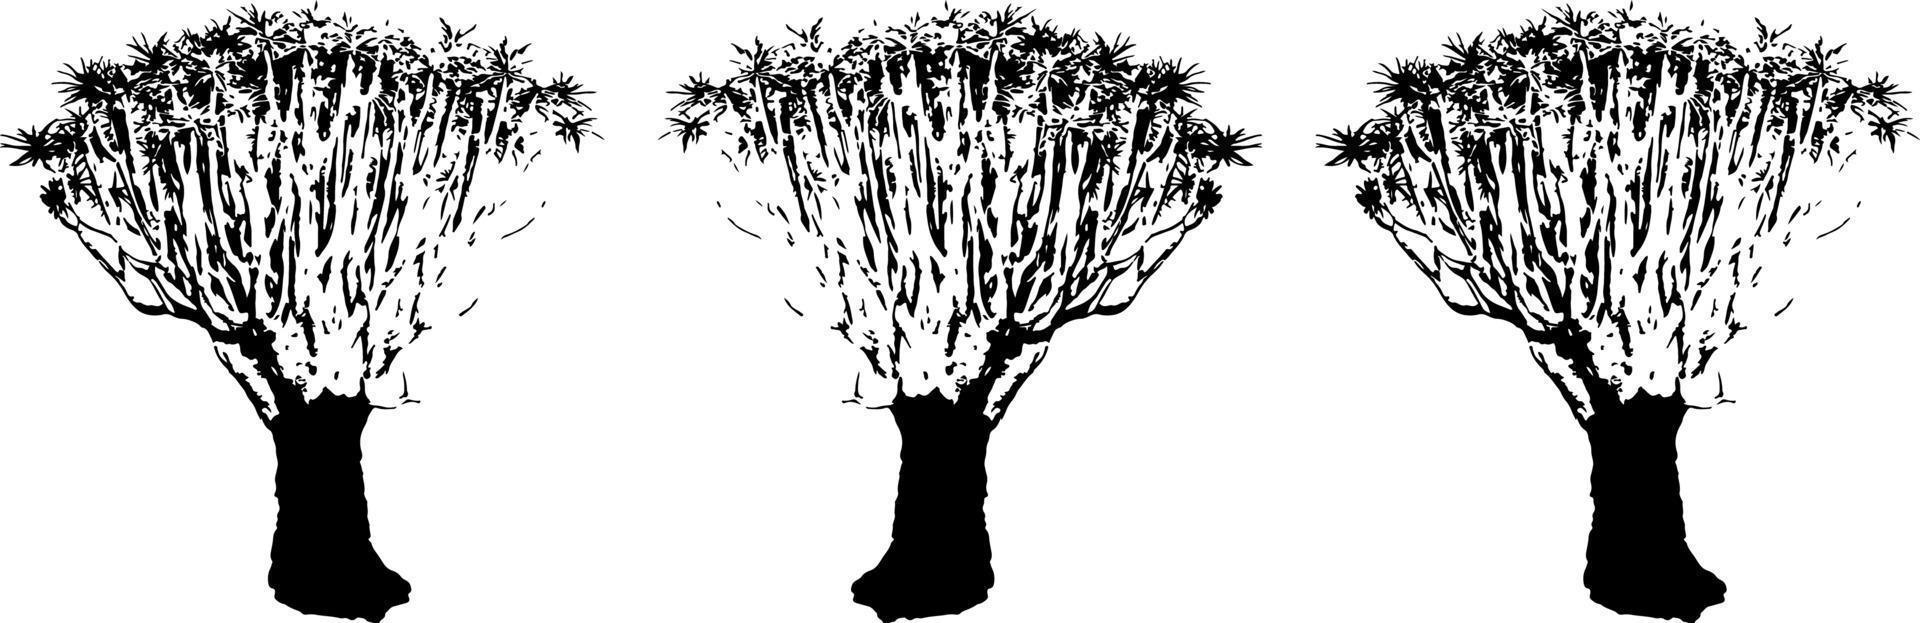 ensemble d'arbres noirs isolé sur fond blanc. silhouettes d'arbres. conception d'arbres pour affiches, bannières et articles promotionnels. illustration vectorielle vecteur